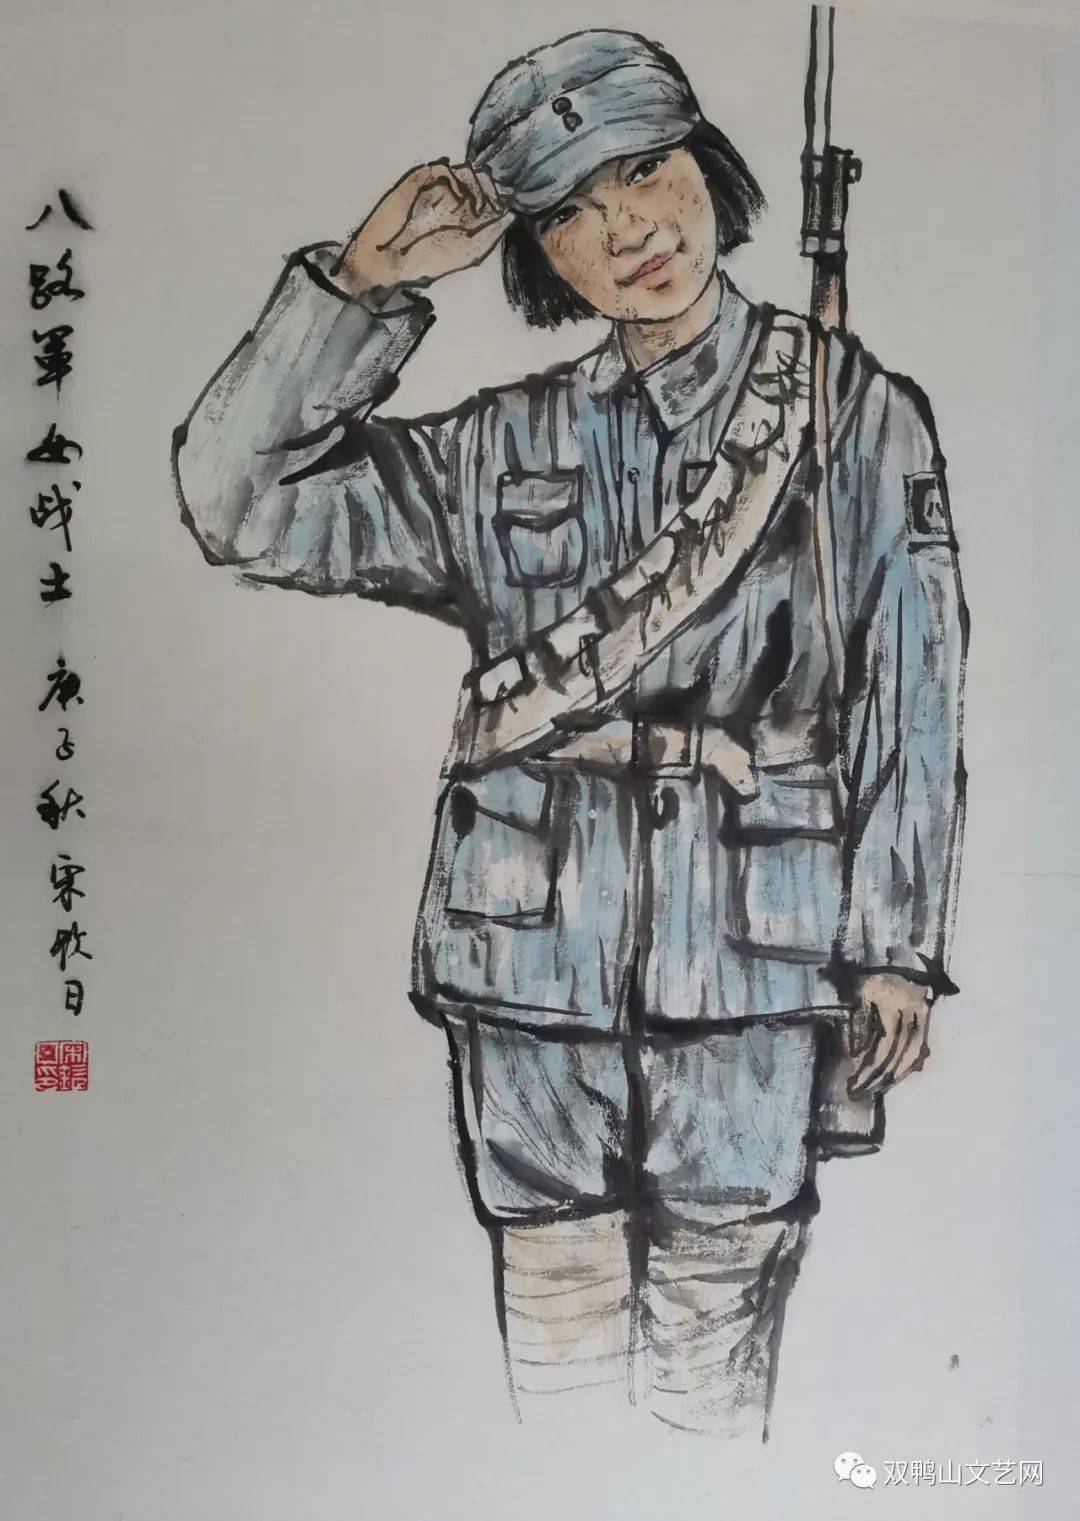 纪念中国人民抗日战争暨世界反法西斯战争胜利75周年 | 美术,剪纸